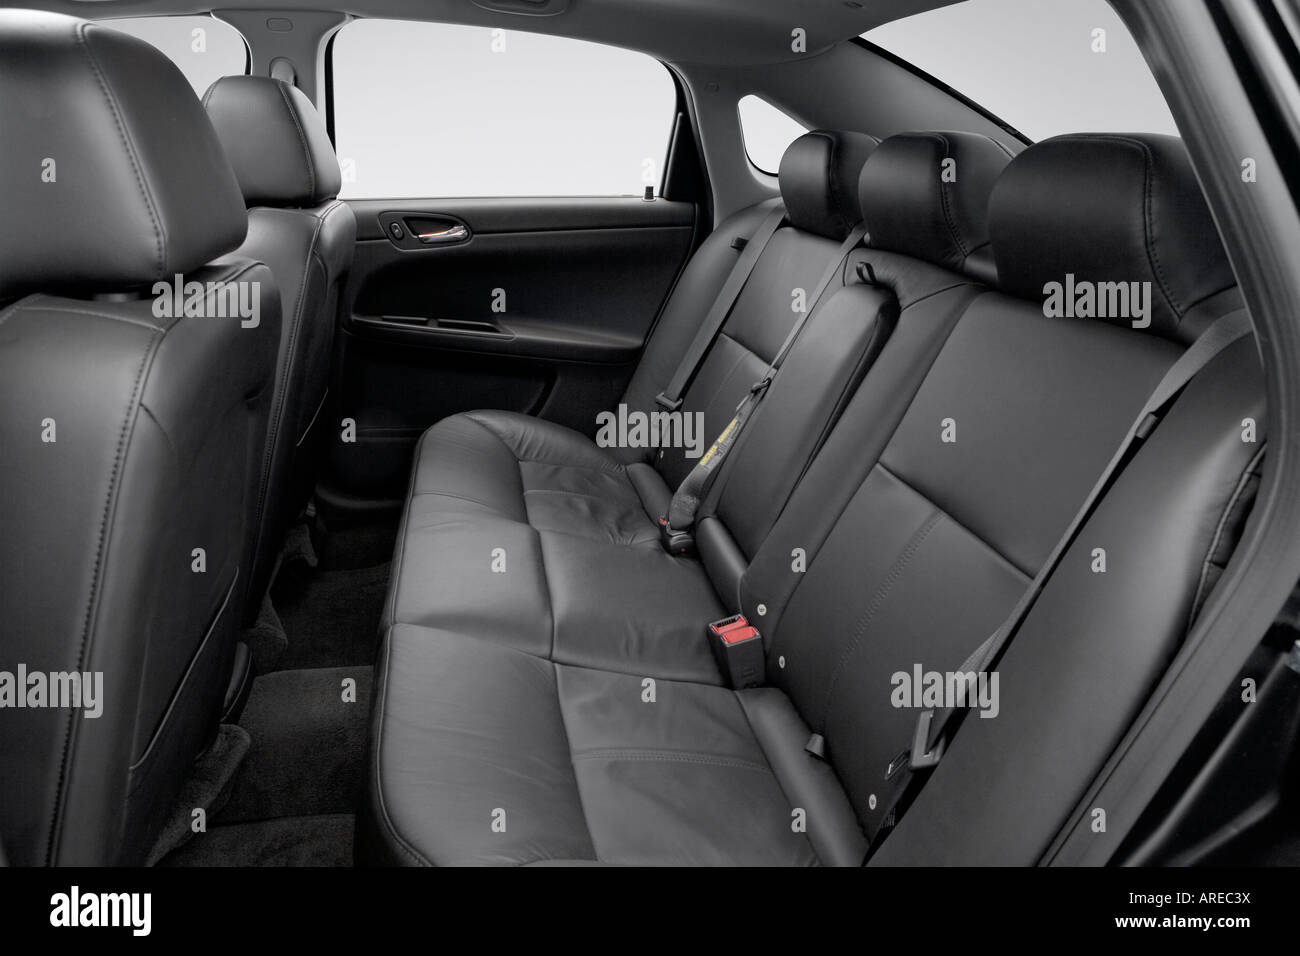 2006 Chevrolet Impala Ss In Black Rear Seats Stock Photo